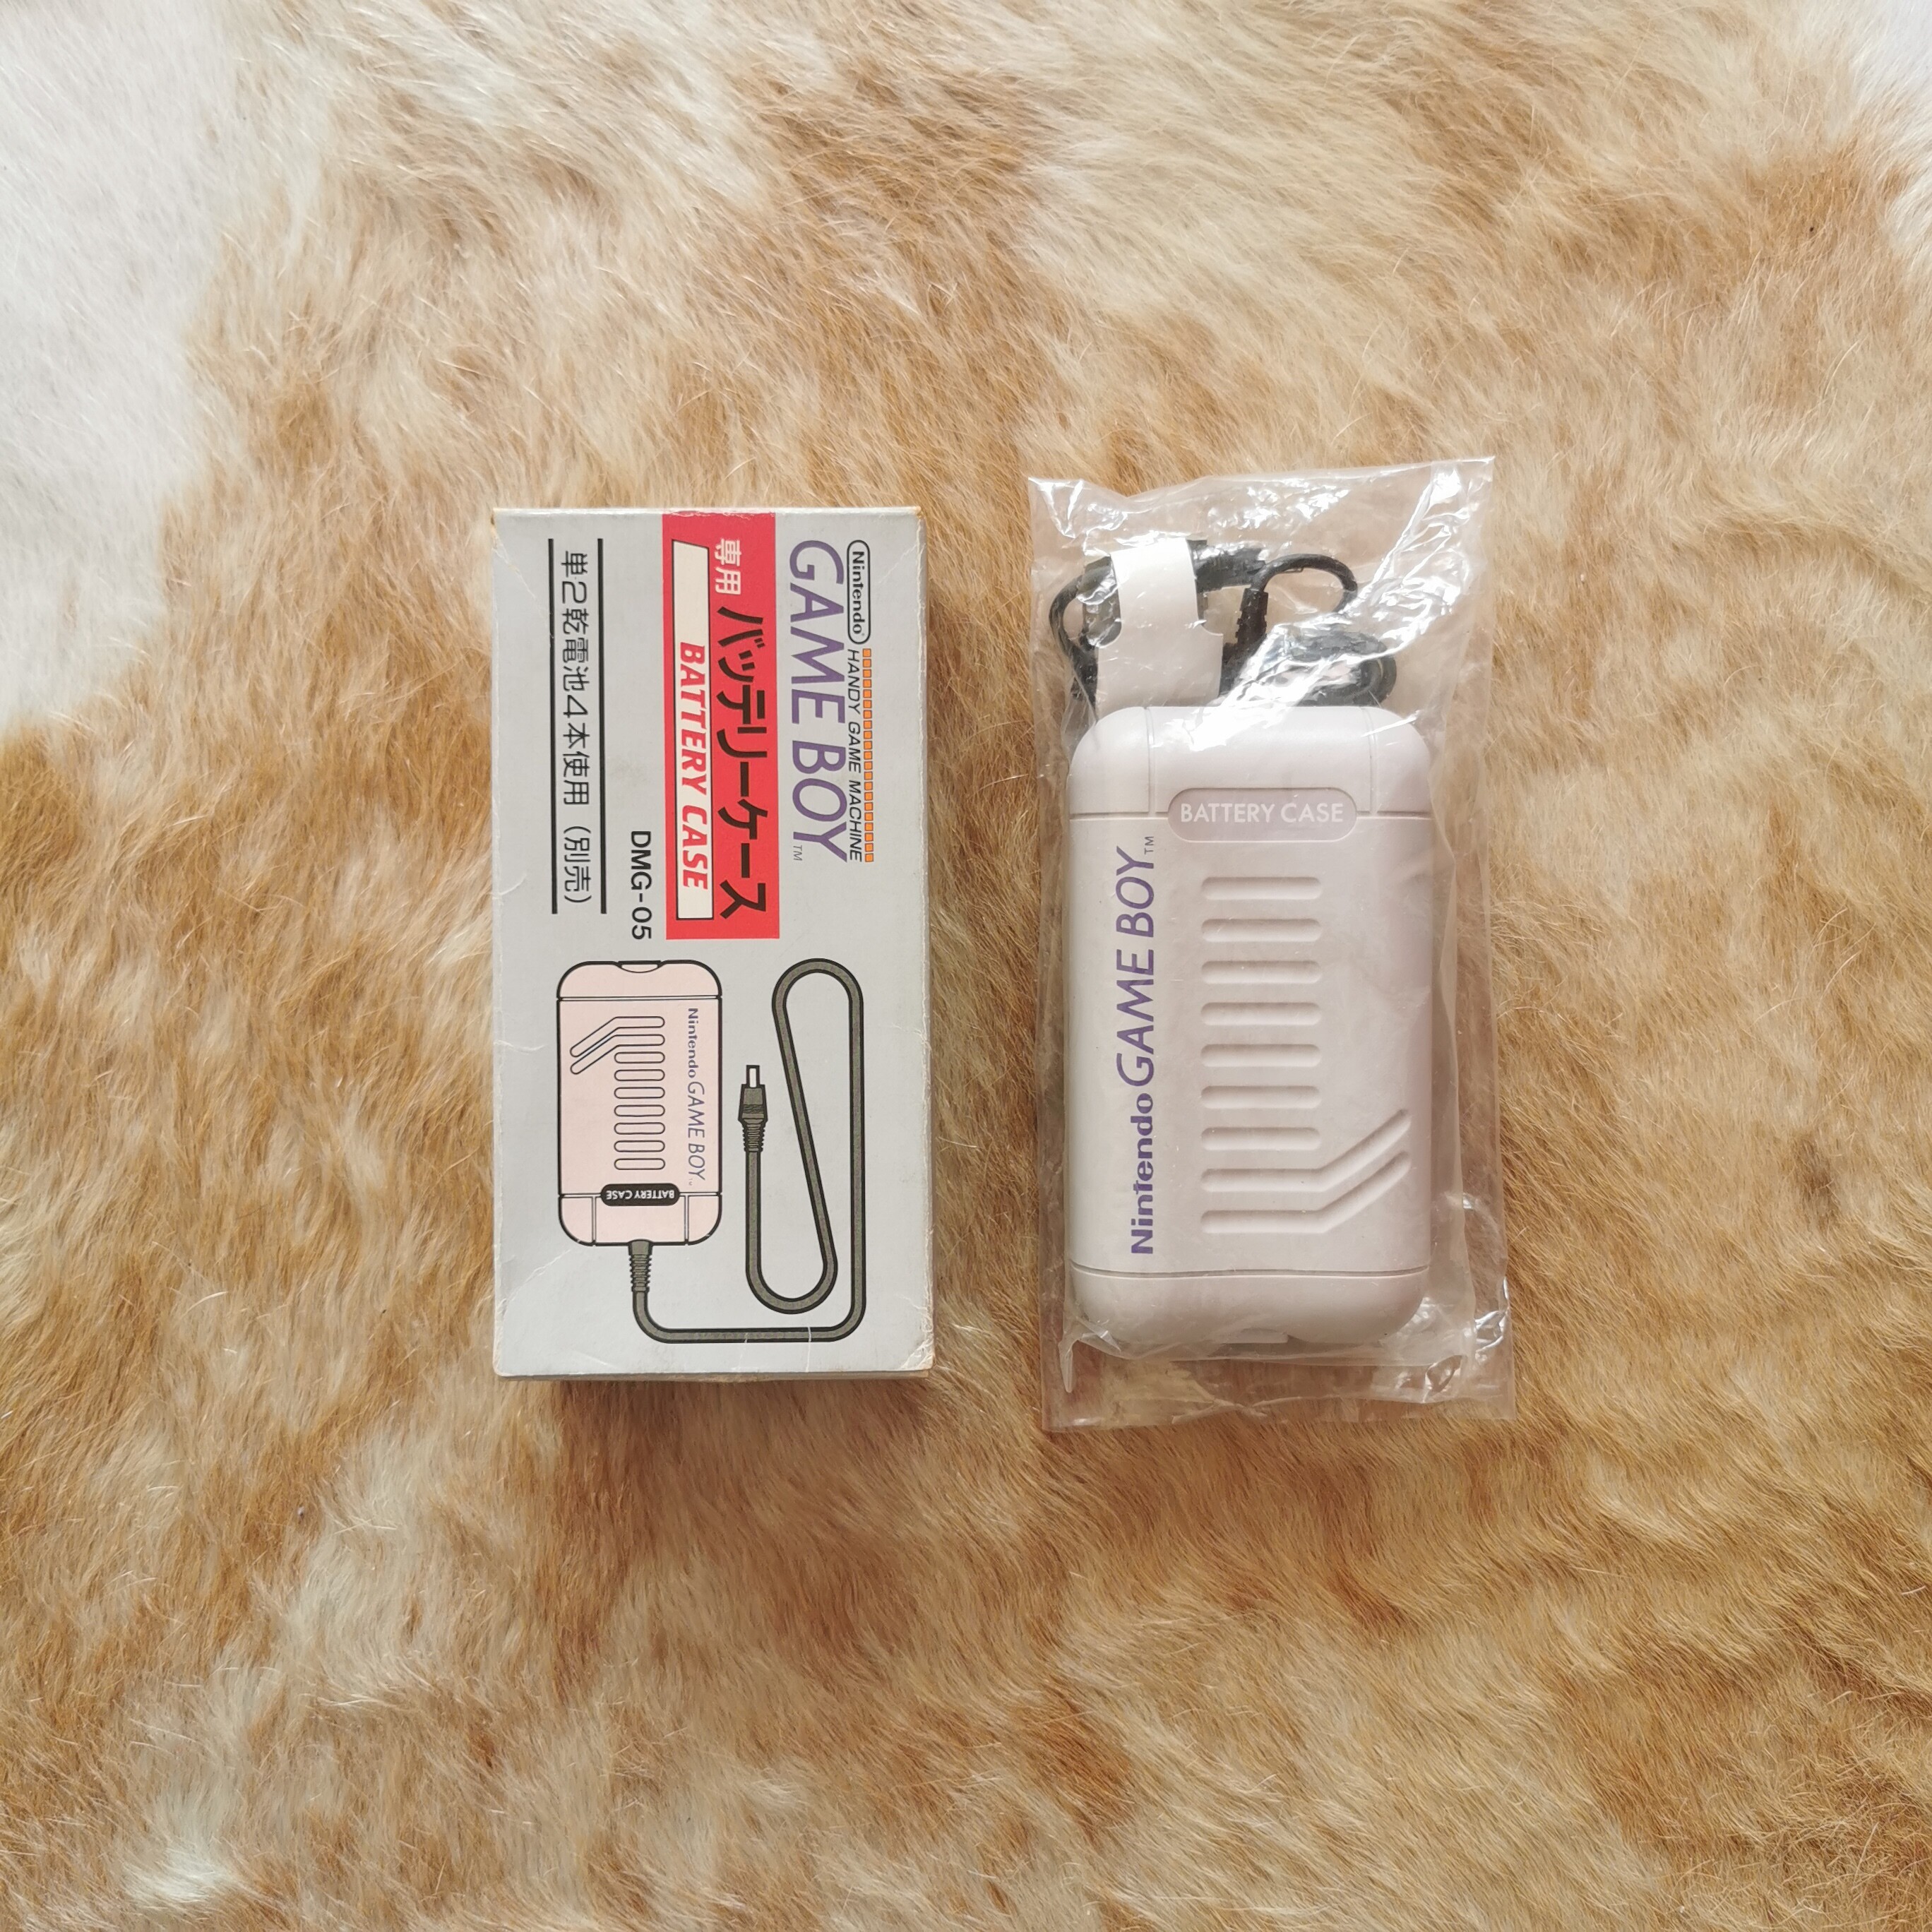  Nintendo Game Boy Battery Case